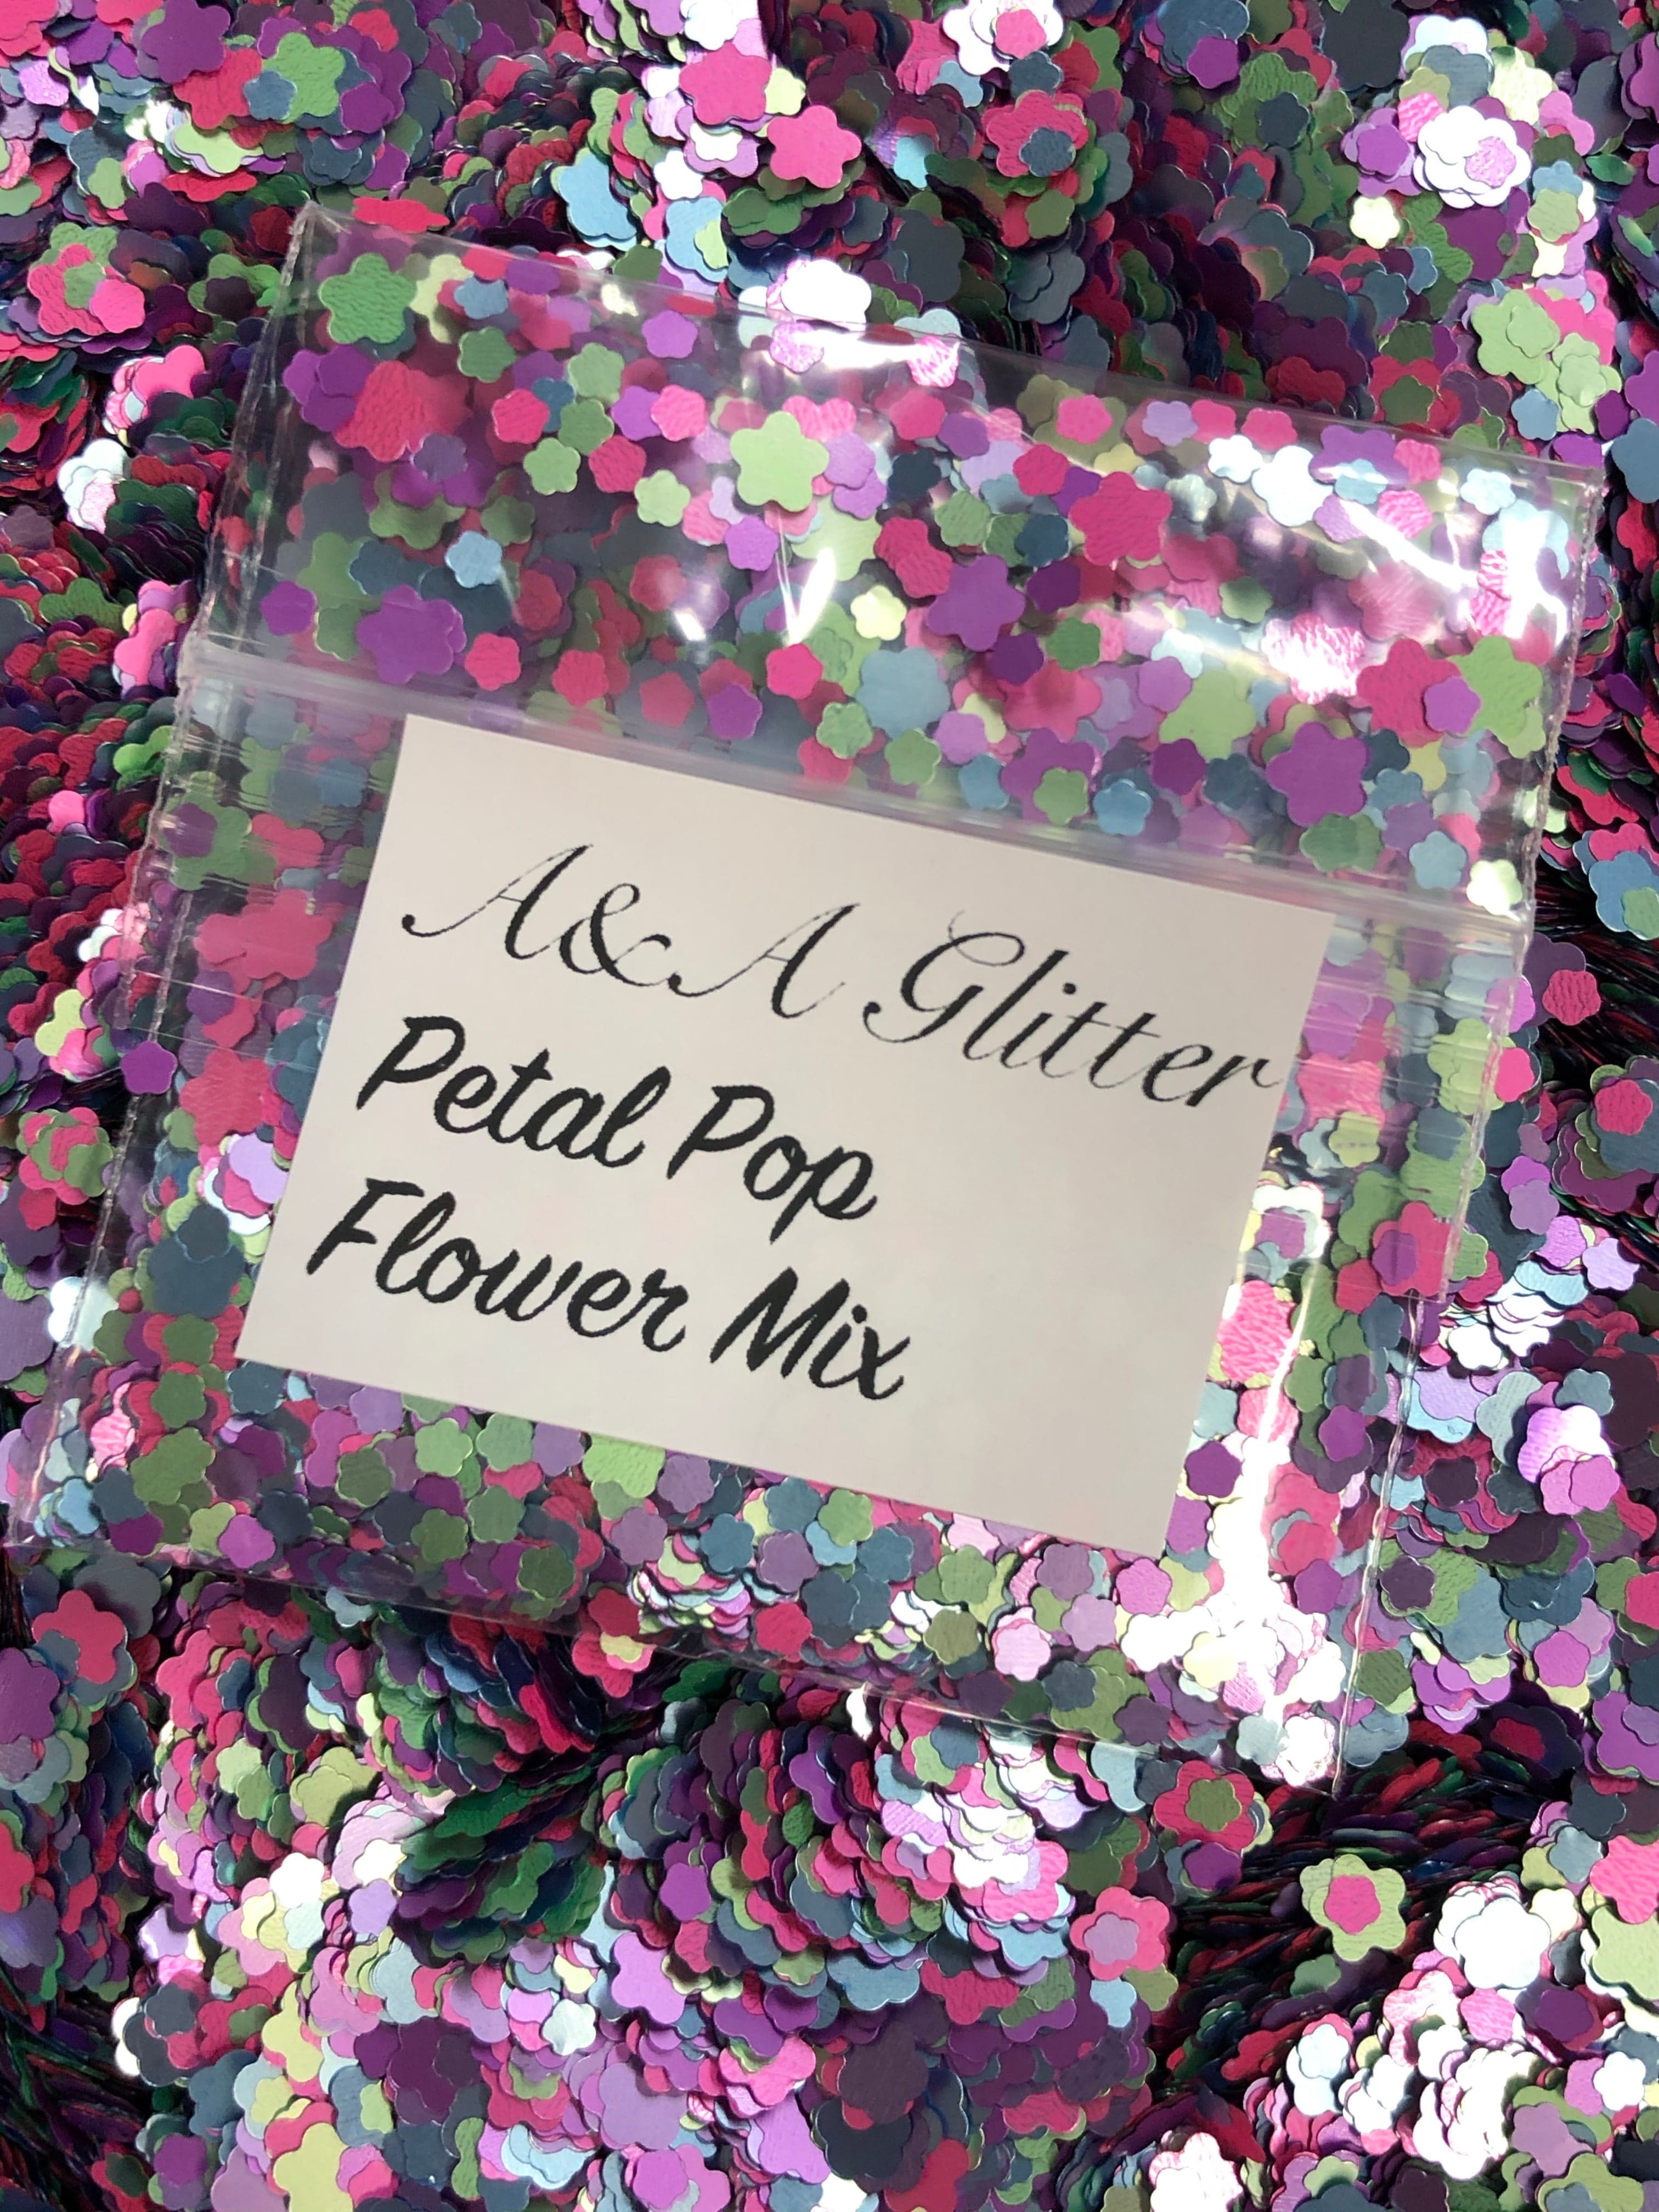 Petal Pop - Flower Mix